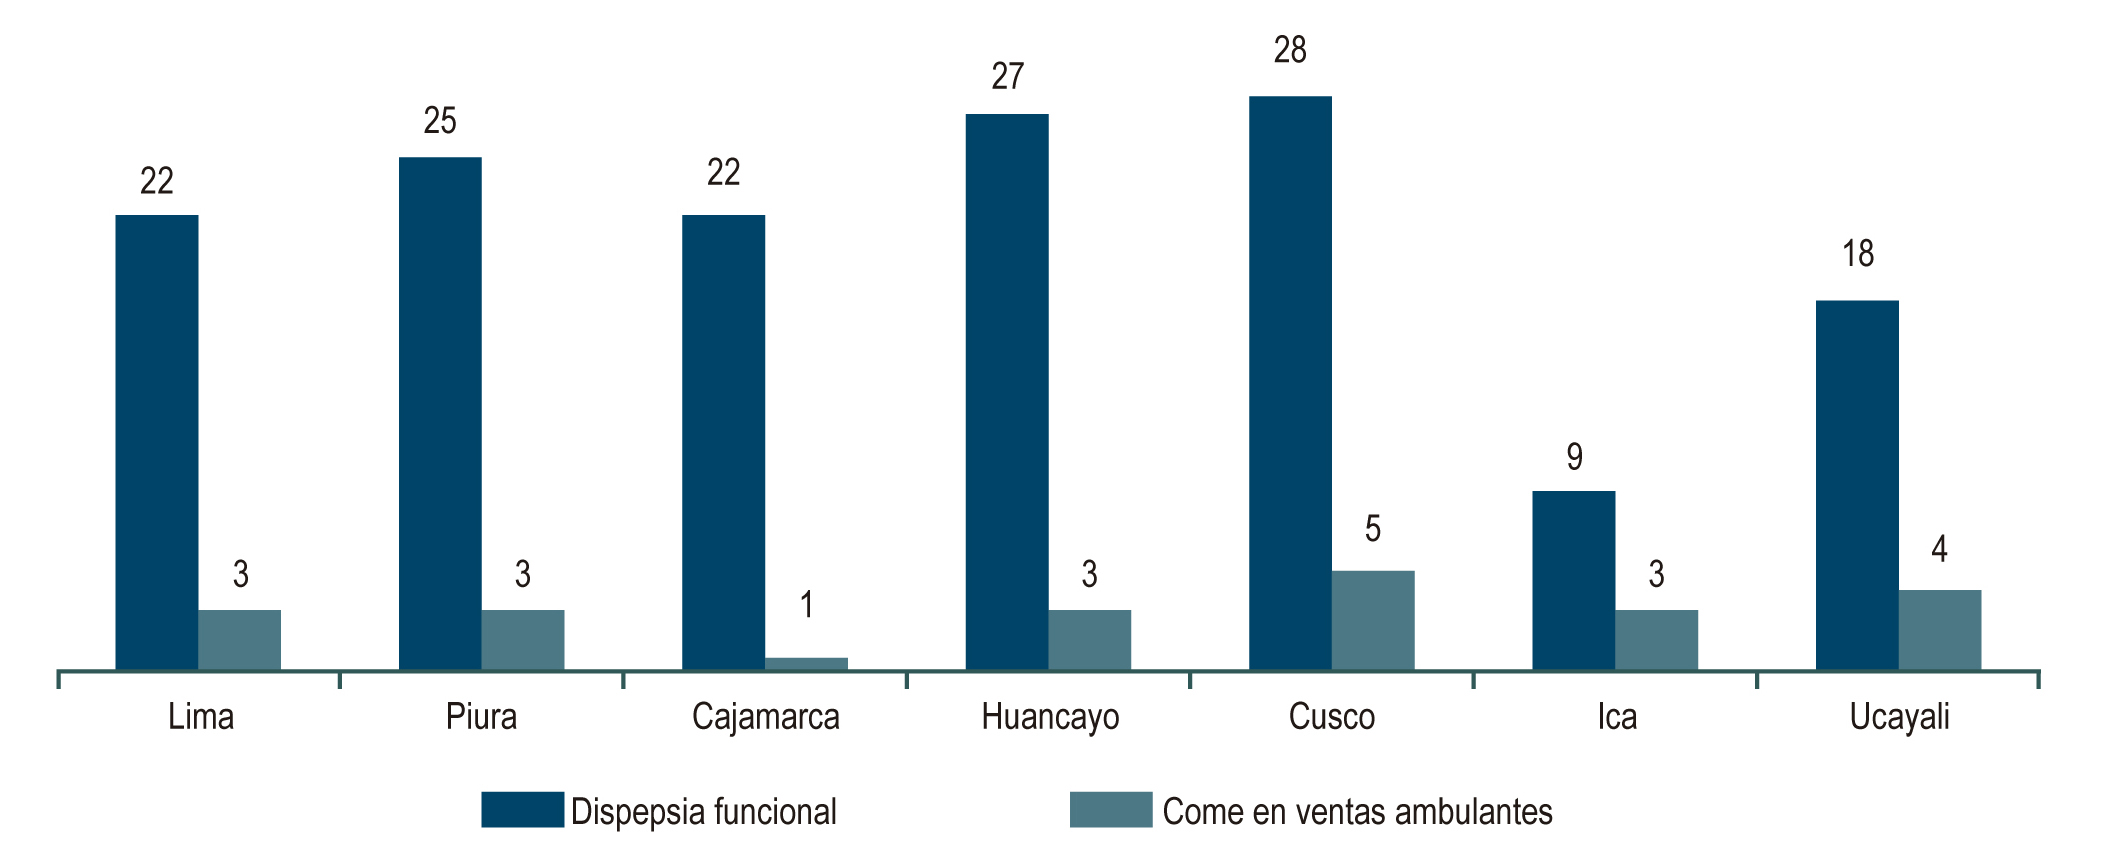 Figura 1. Porcentaje de dispepsia funcional y consumo de alimentos en sitios de ventas ambulantes en estudiantes de medicina de siete departamentos del Perú.